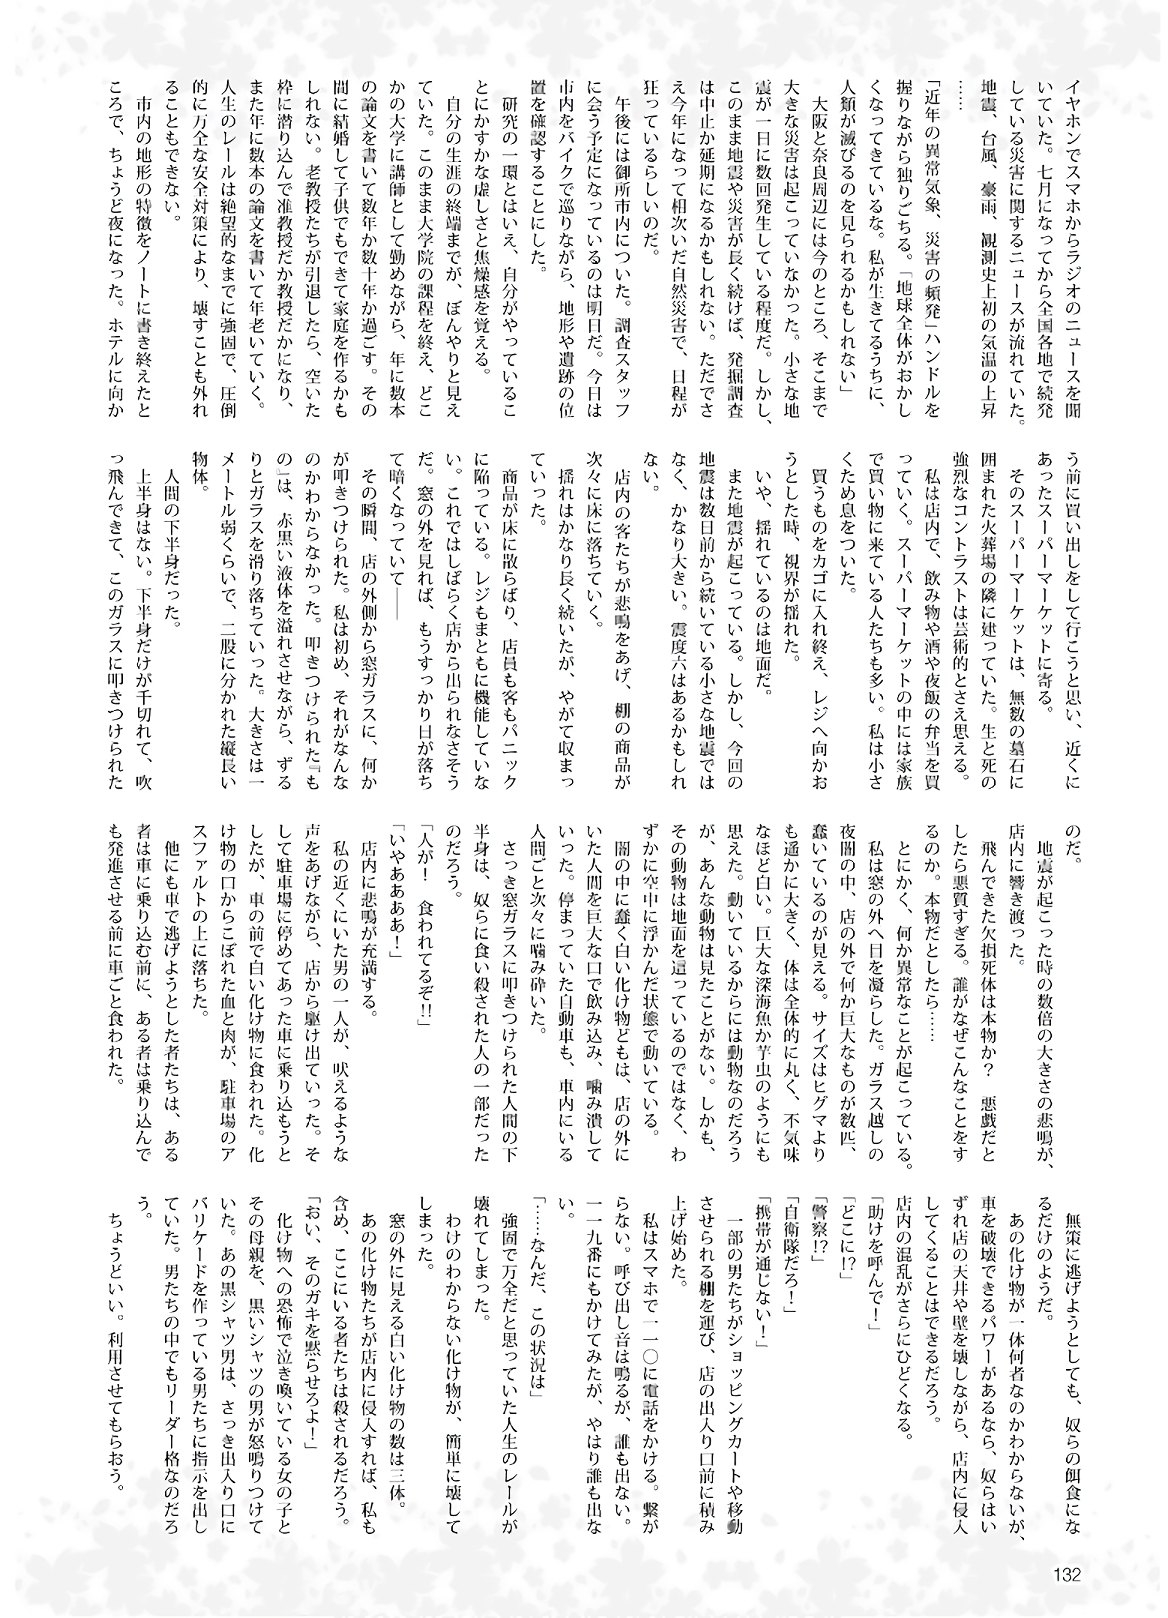 Dengeki G's Magazine #286 - May 2021 129